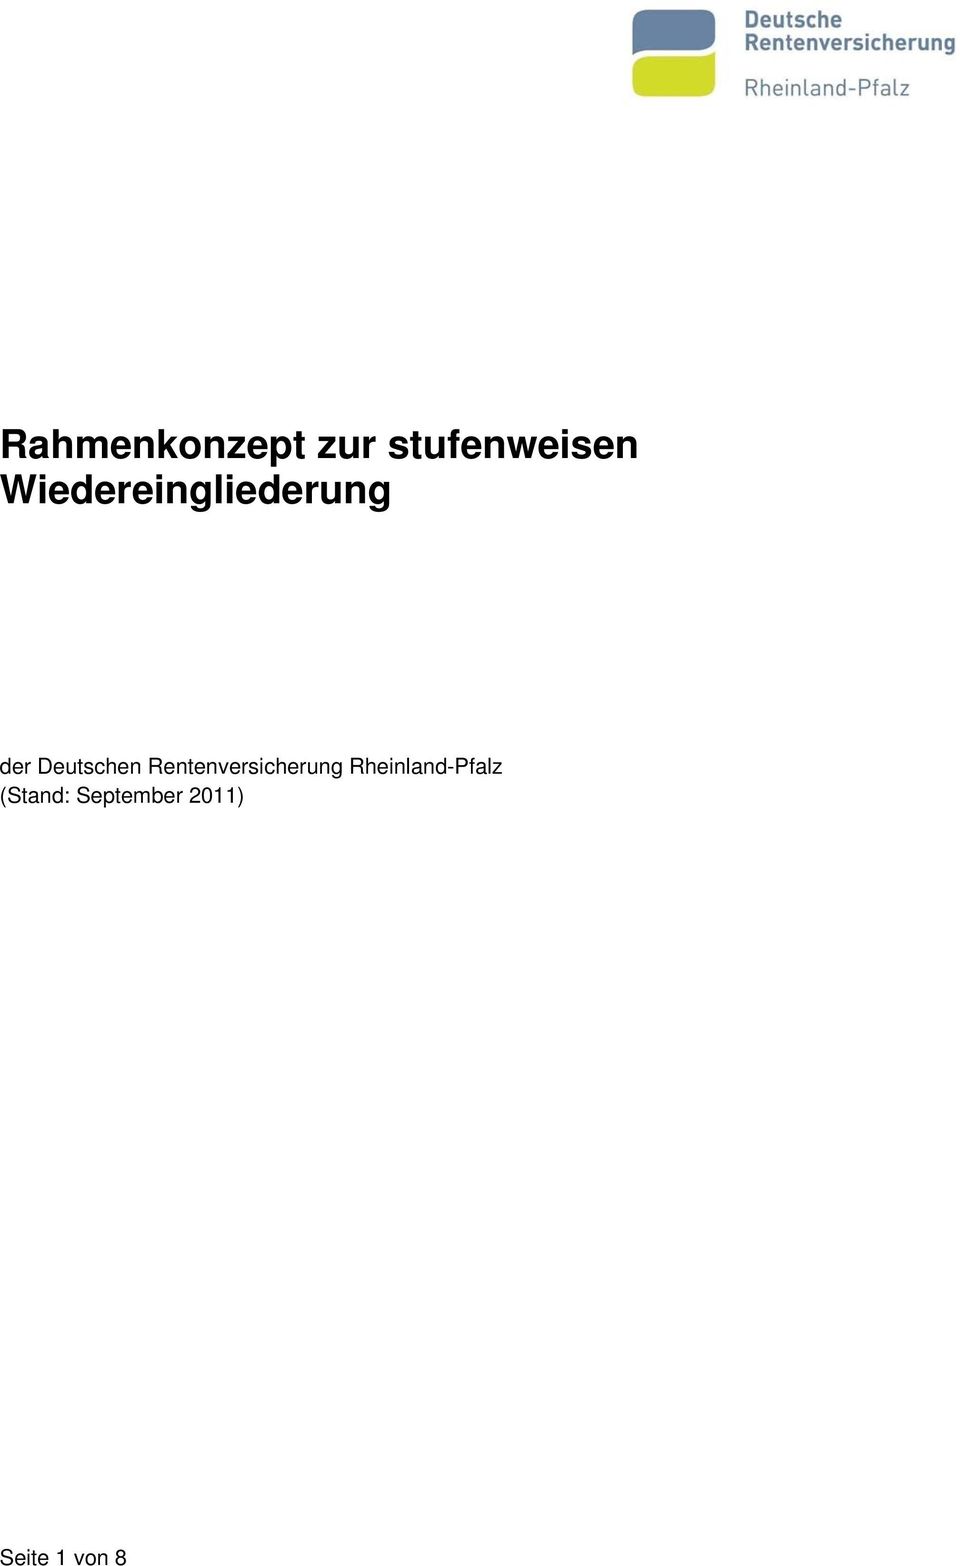 Rentenversicherung Rheinland-Pfalz